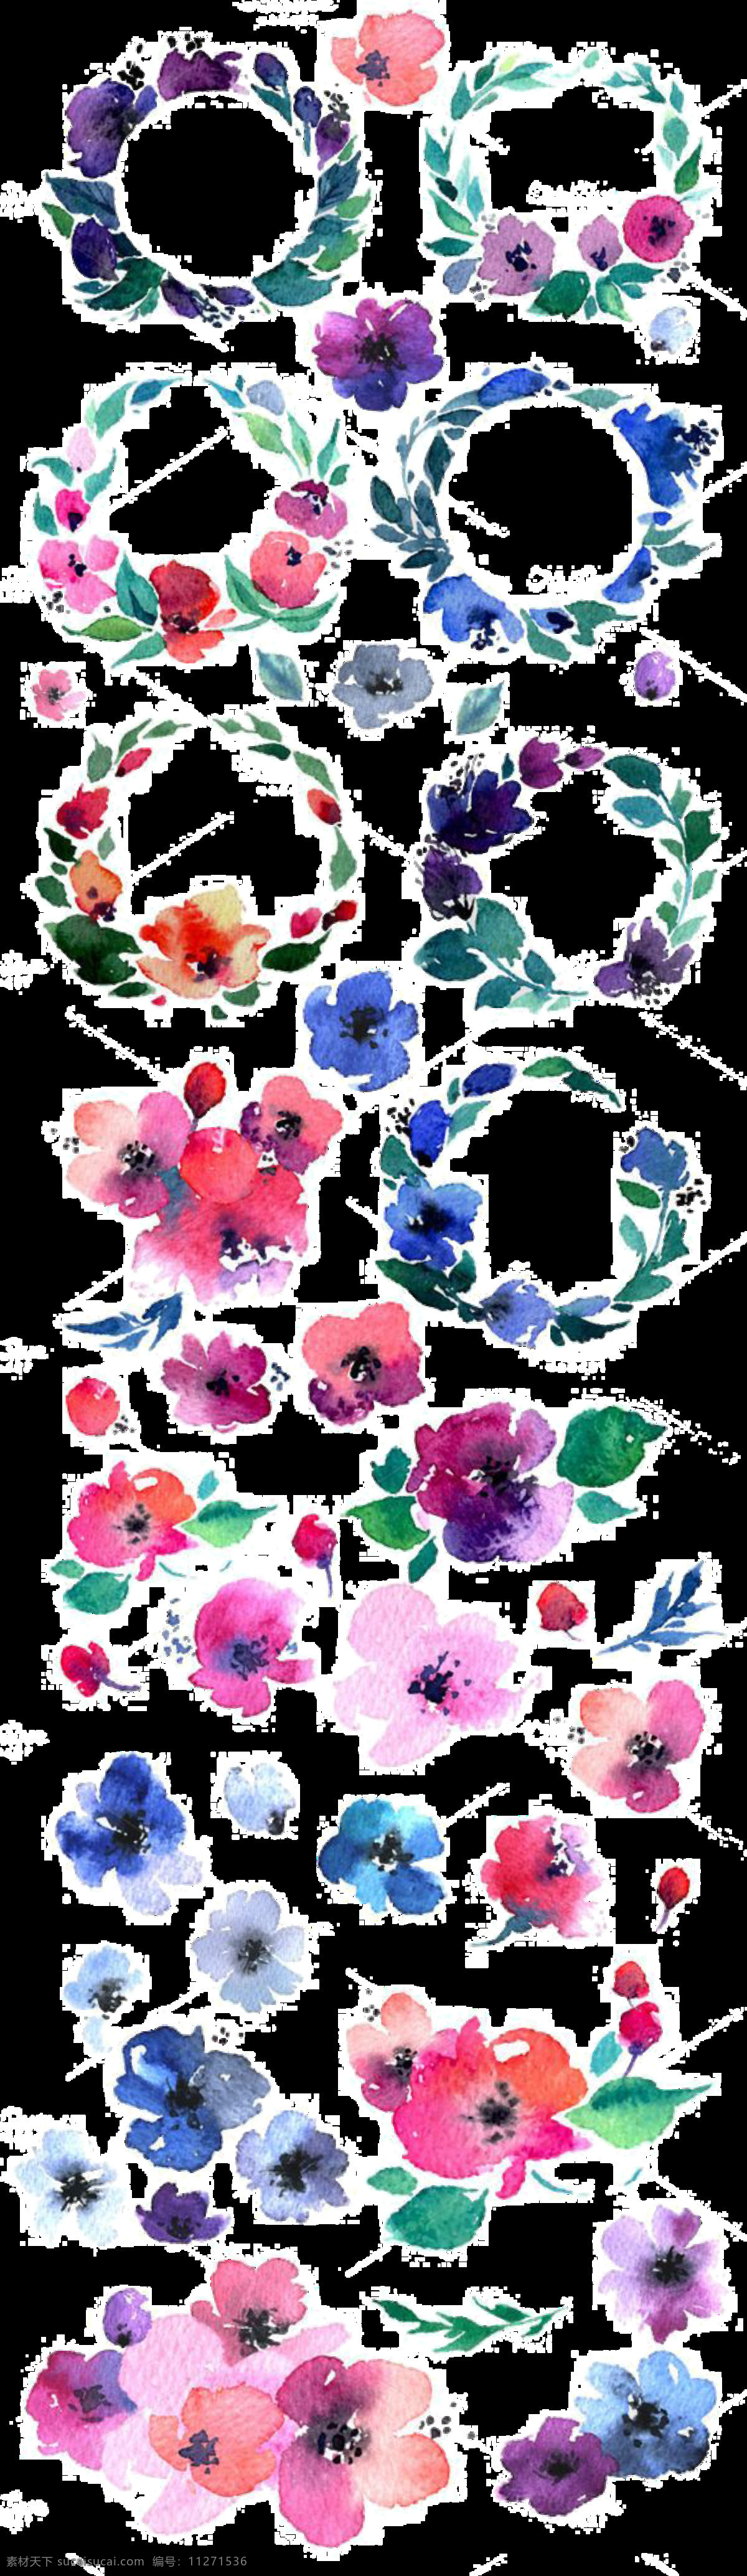 清新 重 色 水彩 花朵 手绘 花环 装饰 元素 飘落的花瓣 手绘花环 手绘水彩 手绘素材 素材唯美 鲜花 重色水彩花朵